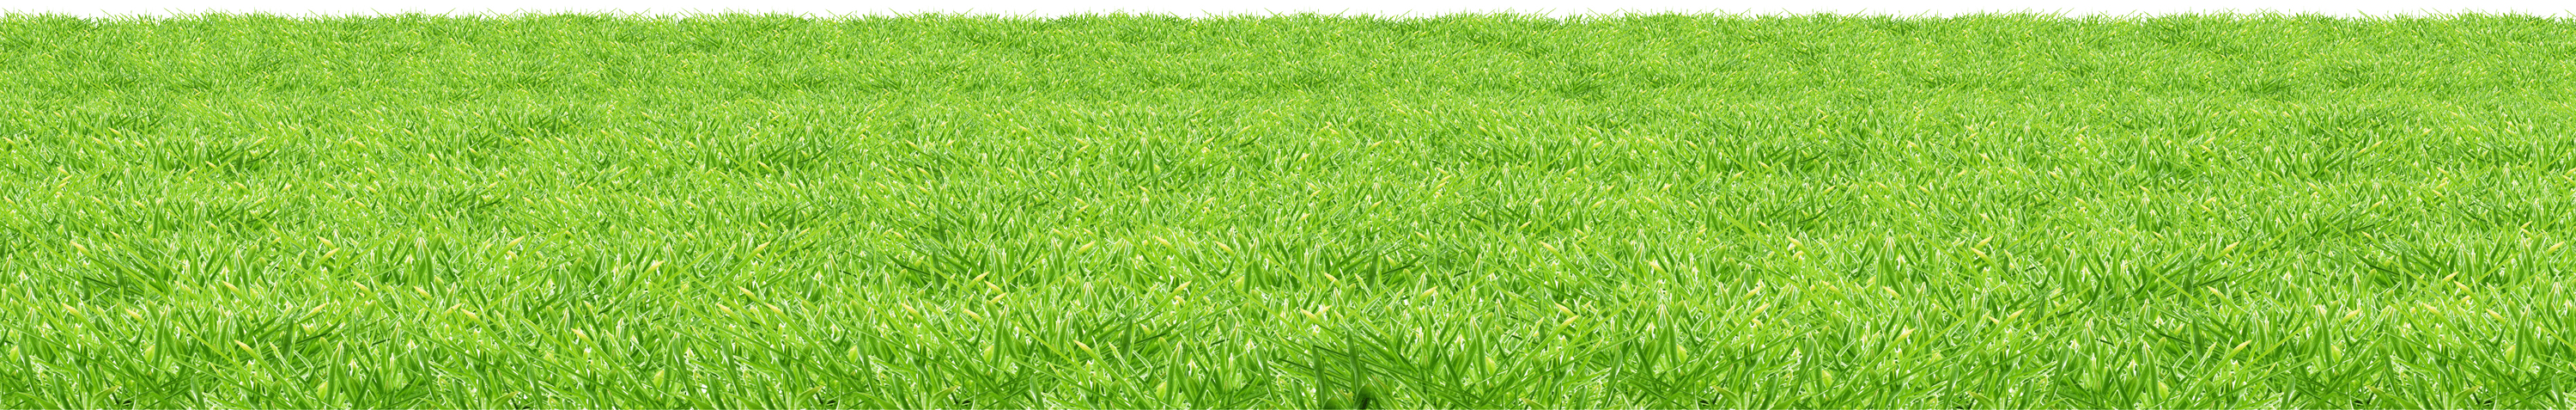 พรมพื้นหญ้าเทียม